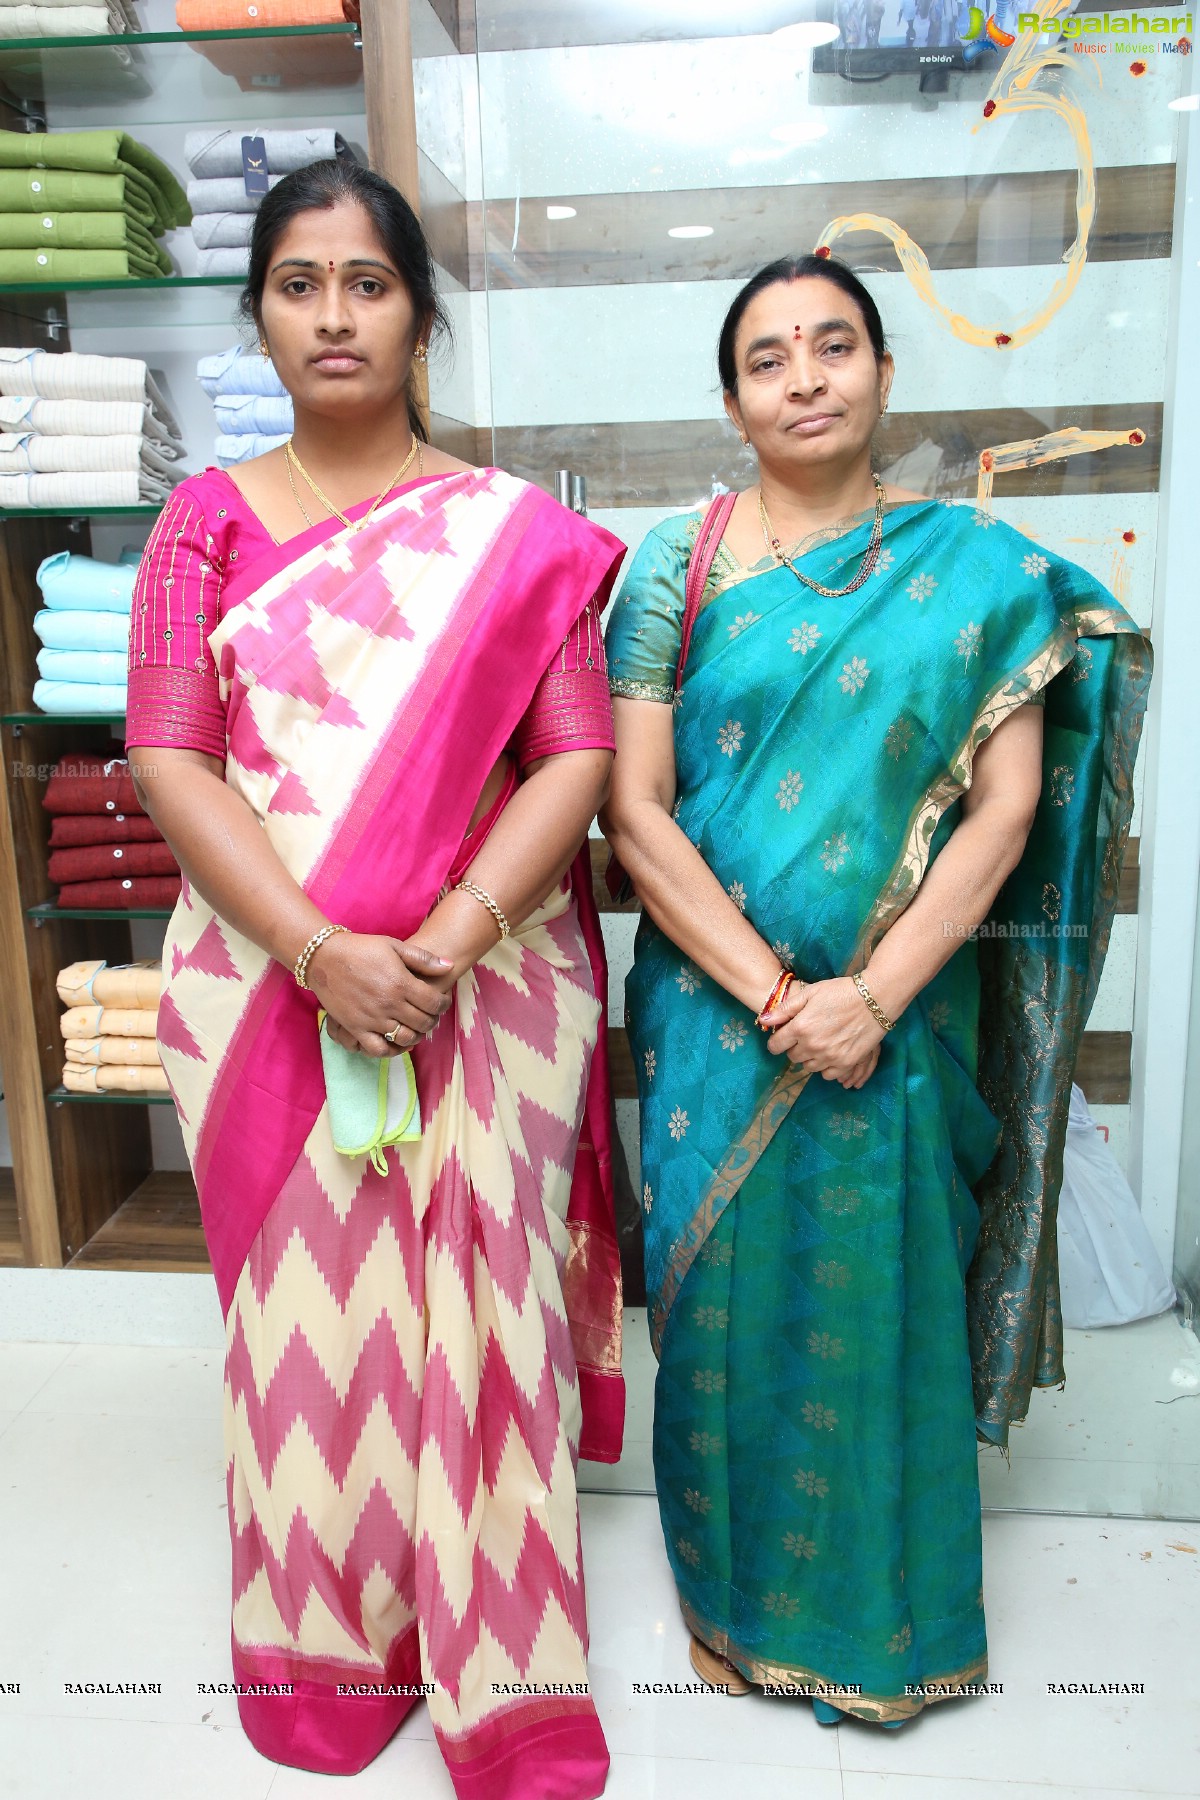 Linen House Showroom Inaugurated by Nabha Natesh at Kukatpally